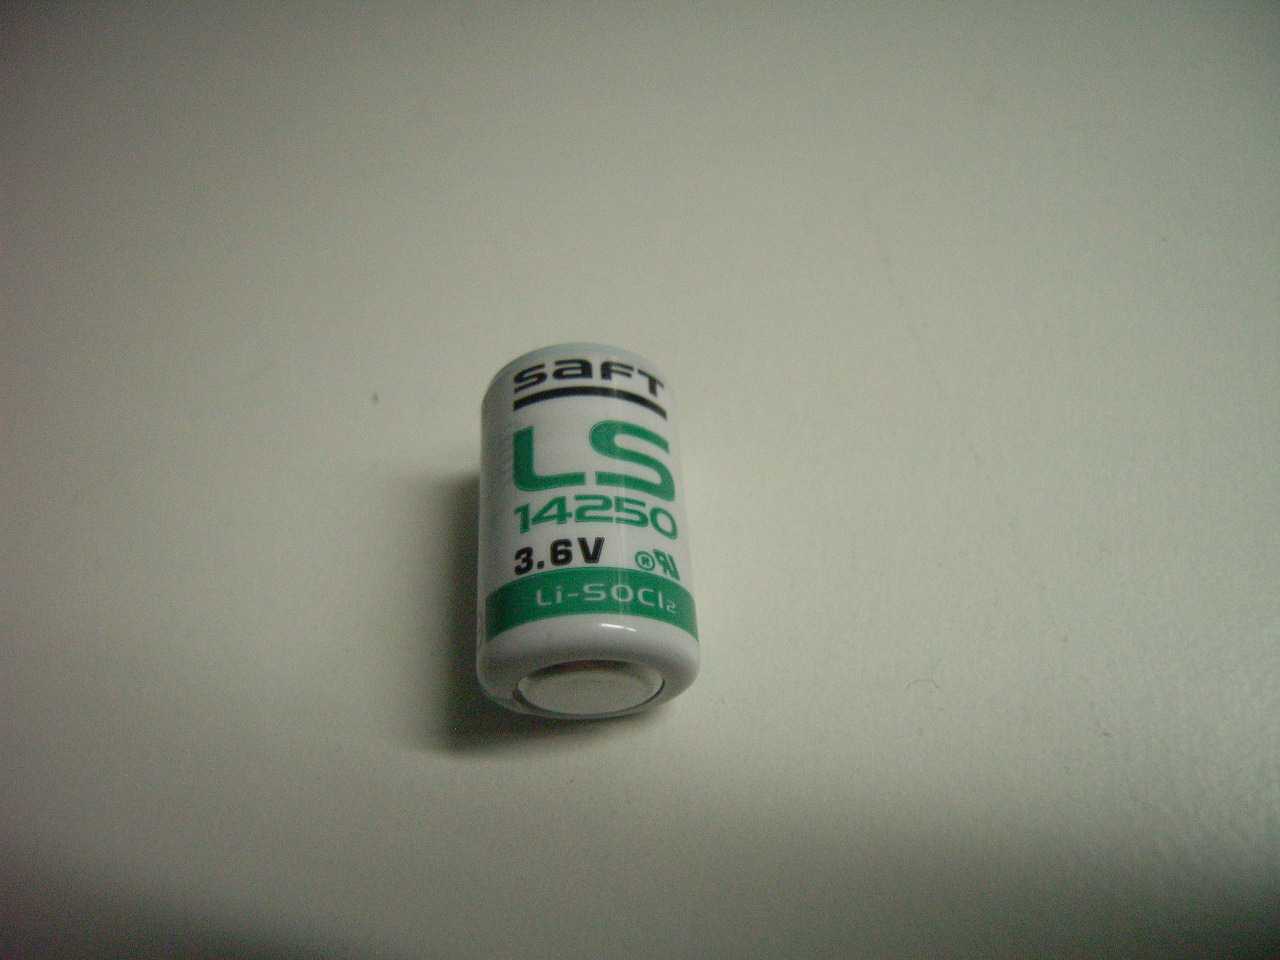 LS14250 Batterie für Tauchcomputer